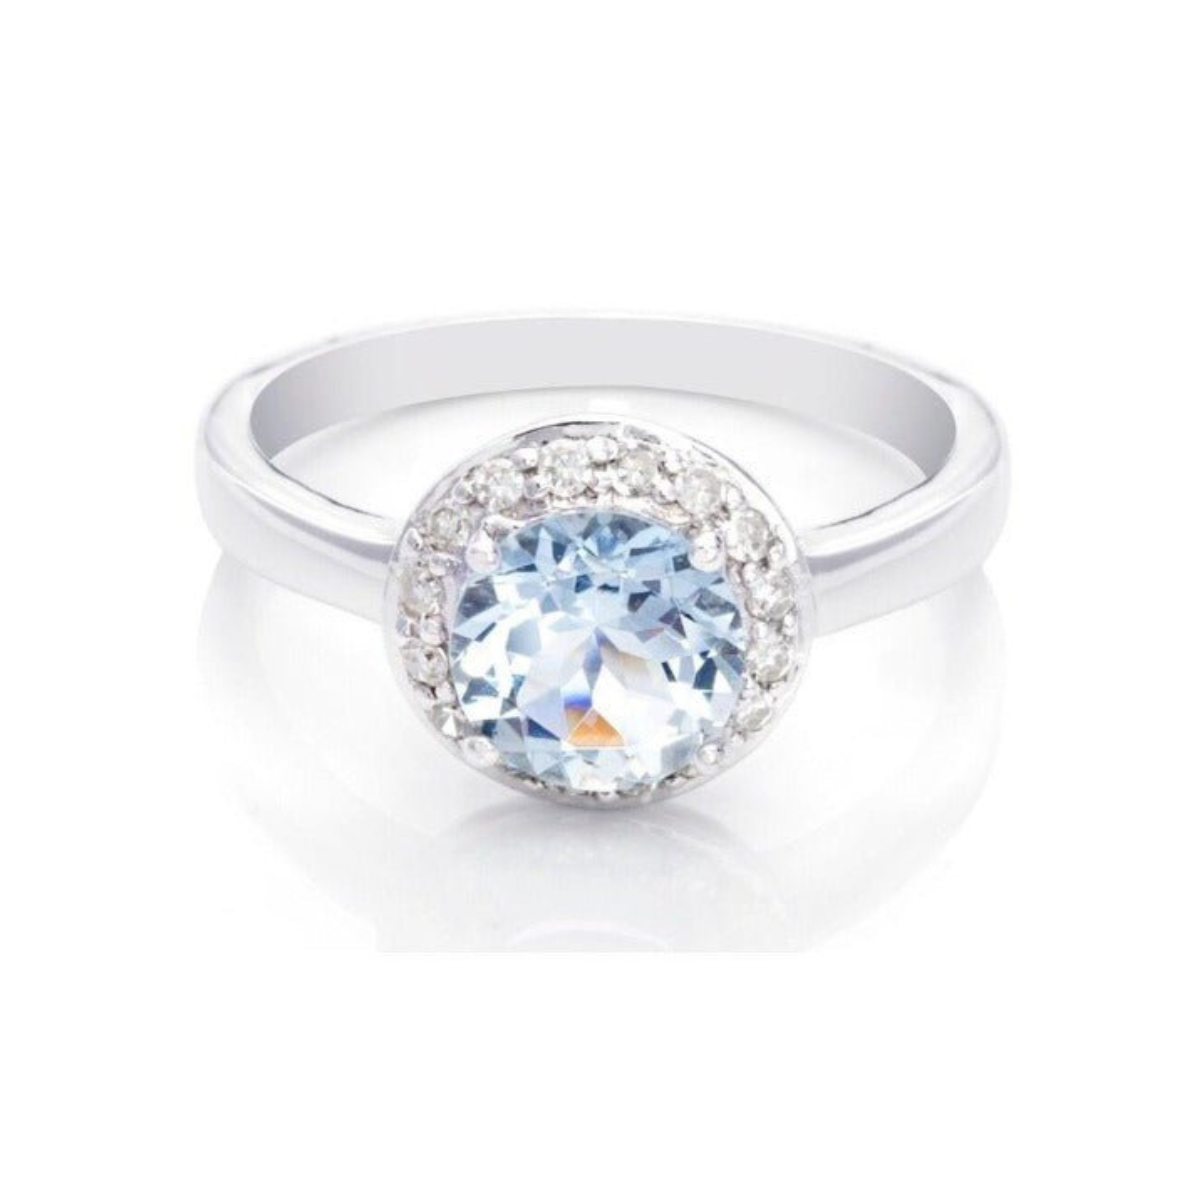 定制 9ct 白金海蓝宝石和钻石戒指（7 毫米） - 宁静优雅、永恒美丽